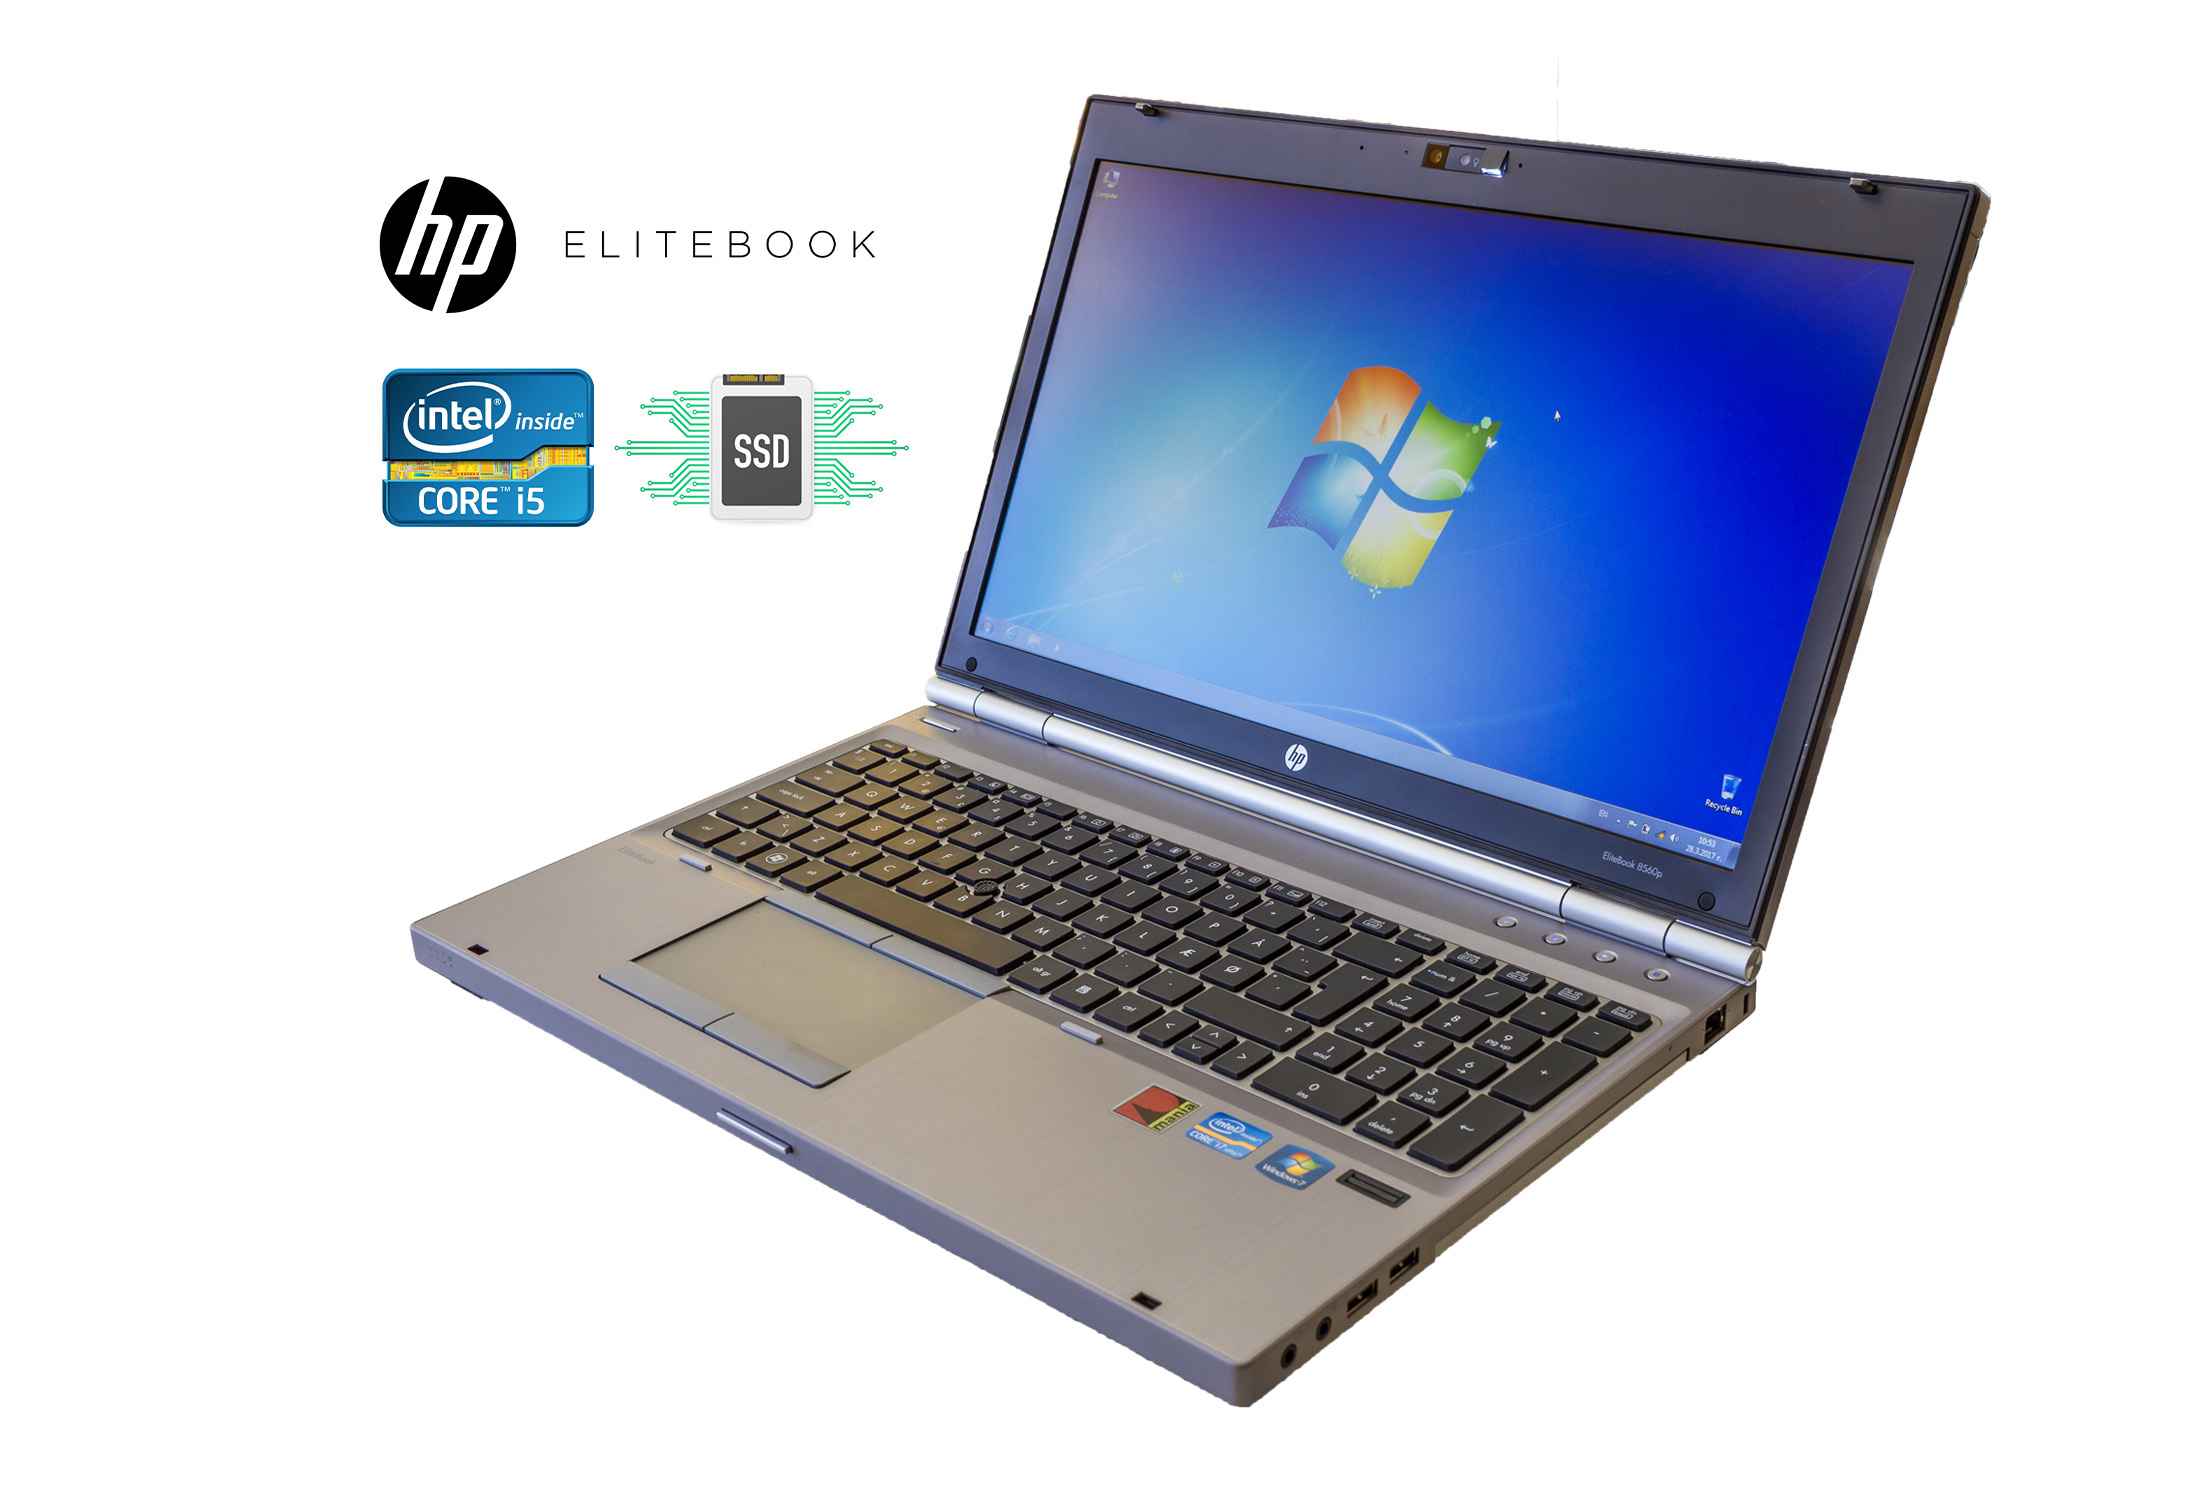 HP Elitebook 8560p i5-2520M 8GB RAM 256GB SSD 1600x900 Camera-e96dq.jpeg